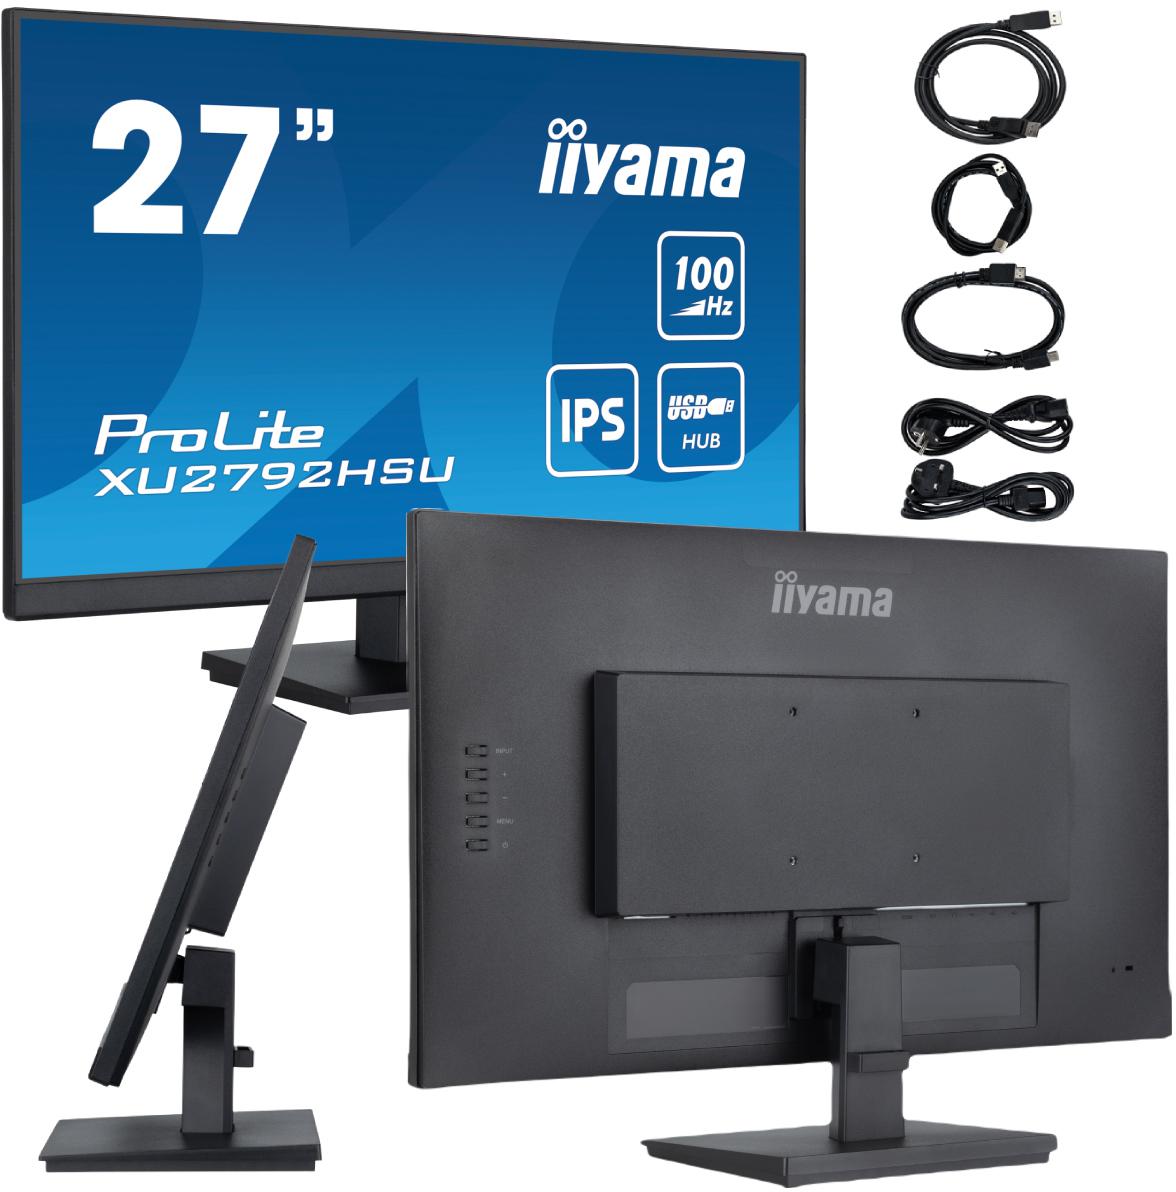 IIYAMA ProLite XU2792HSU-B6 27\" monitor z panelem w technologii IPS i z hubem USB - najważniejsze cechy: